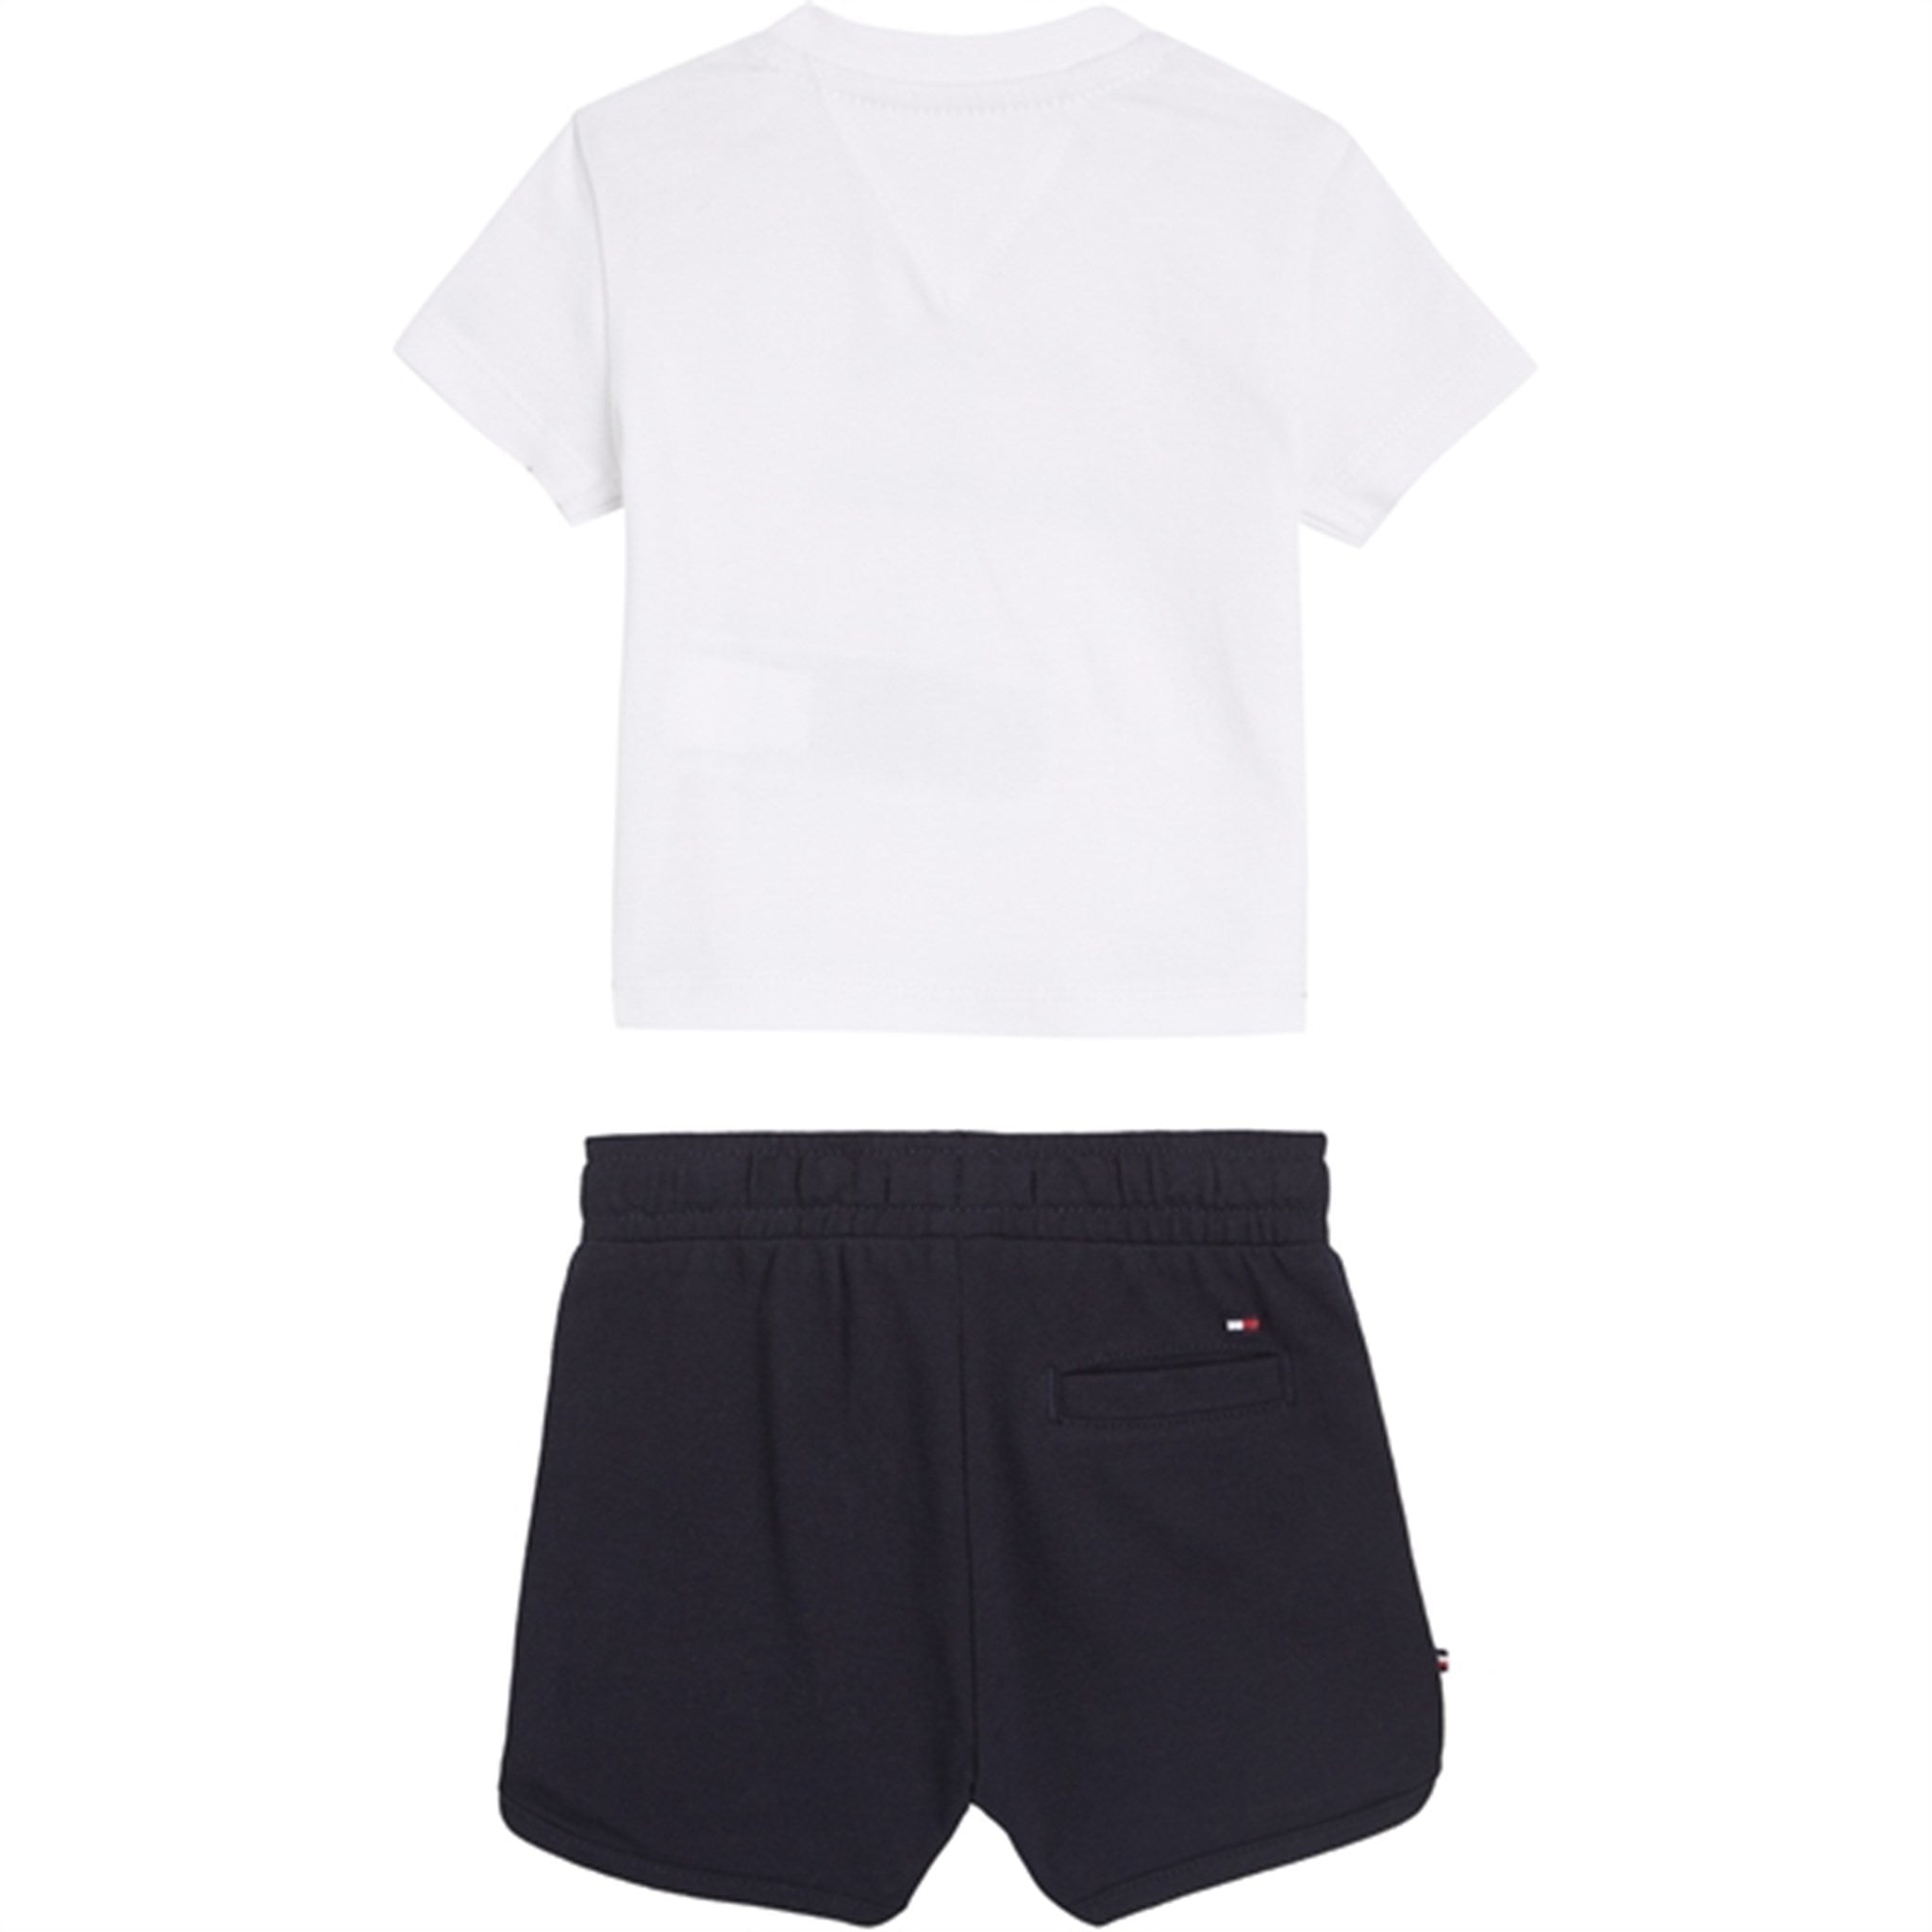 Tommy Hilfiger Baby Th Logo Shorts Set White 3